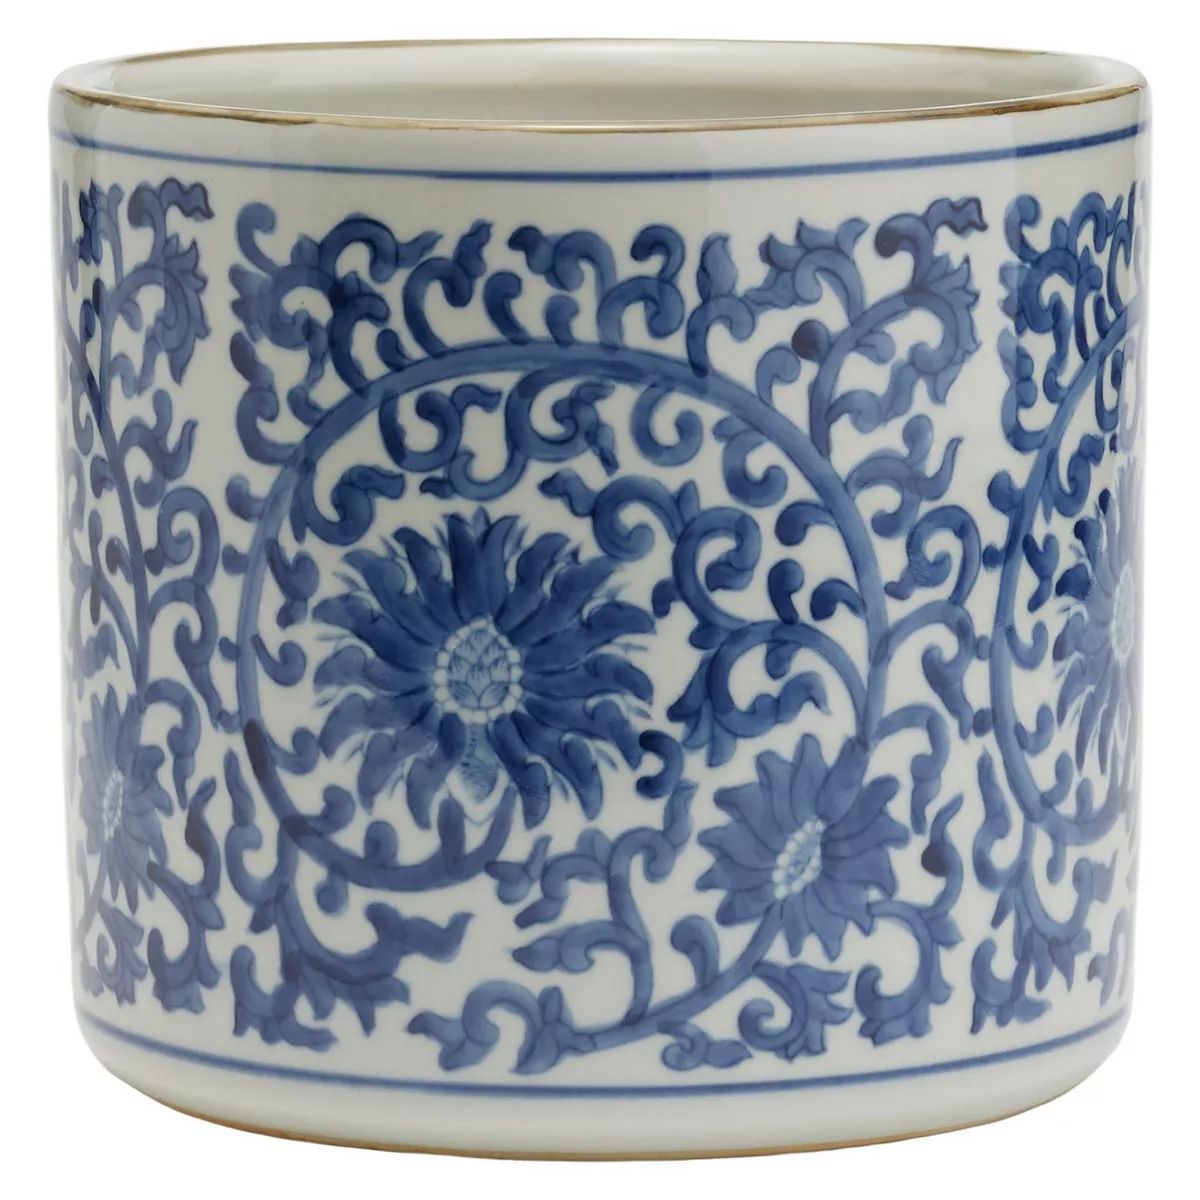 Blue and White Lotus Flower Vase Planter | Kohl's